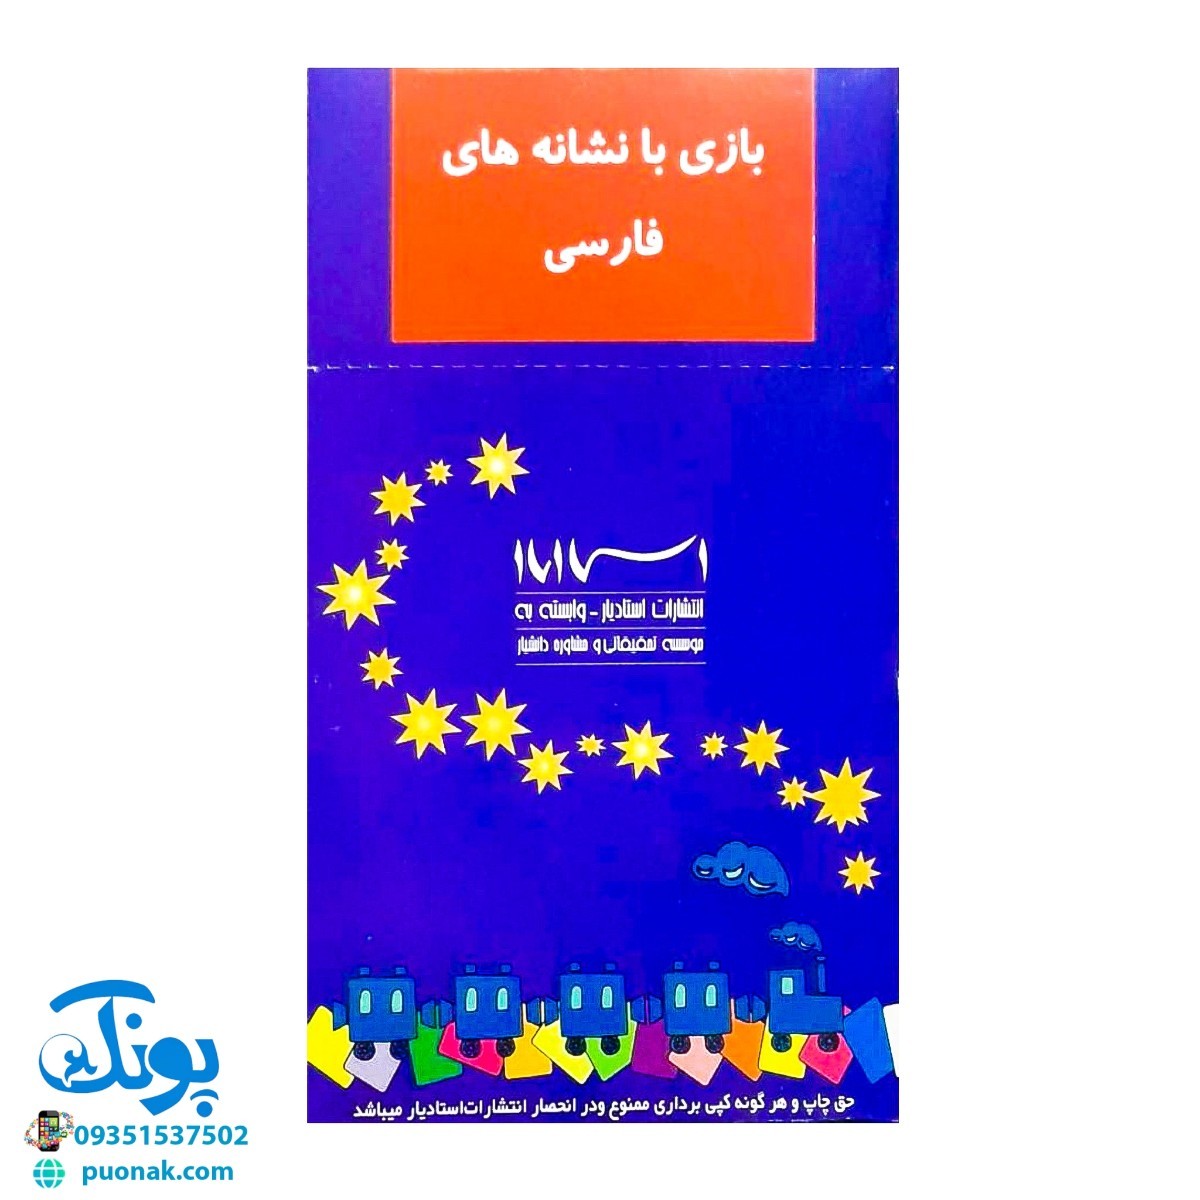 بازی با نشانه های فارسی و بازی با حروف الفبای فارسی فردی و گروهی (۳۹ کارت تصویری پشت رو)